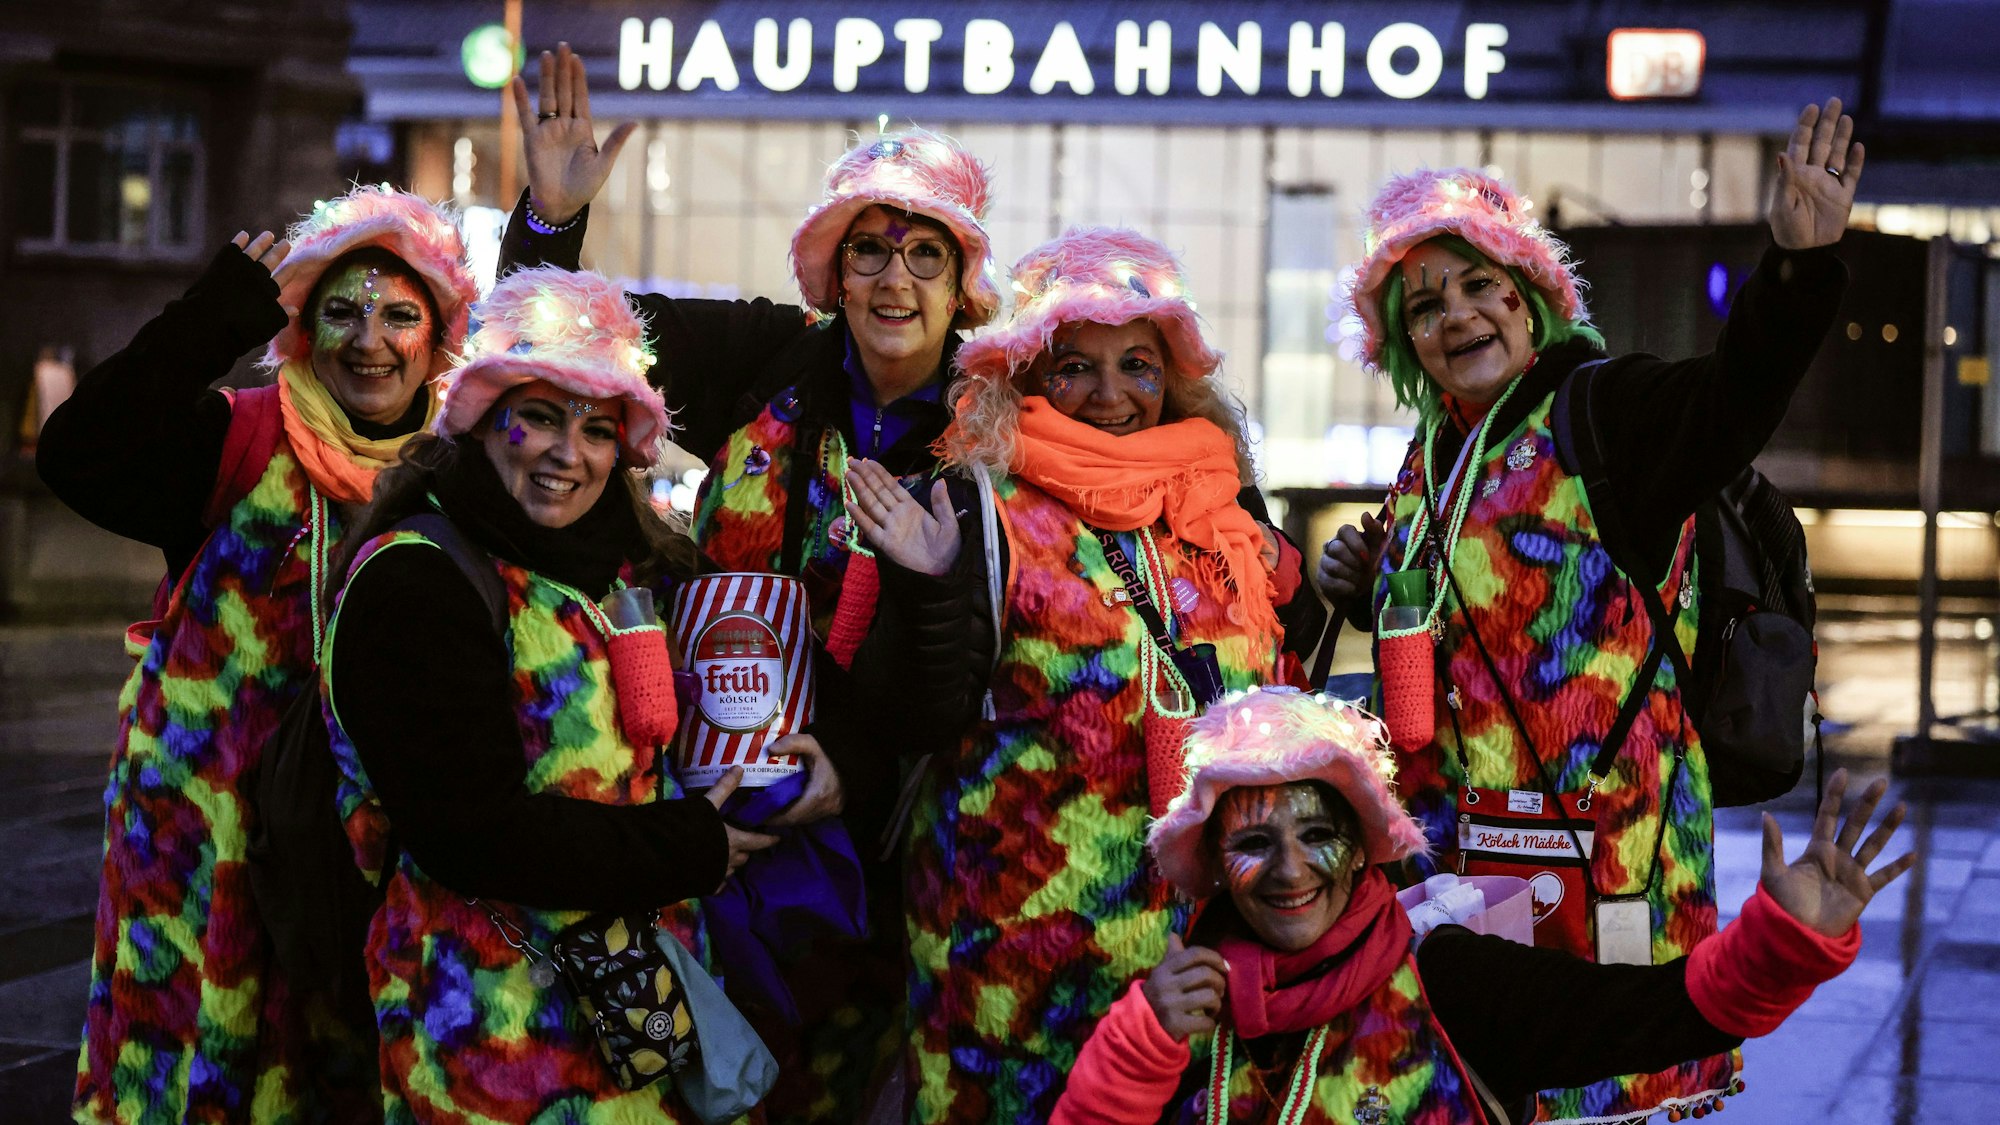 Bunt und feierbereit: eine Frauen-Gruppe am Hauptbahnhof.